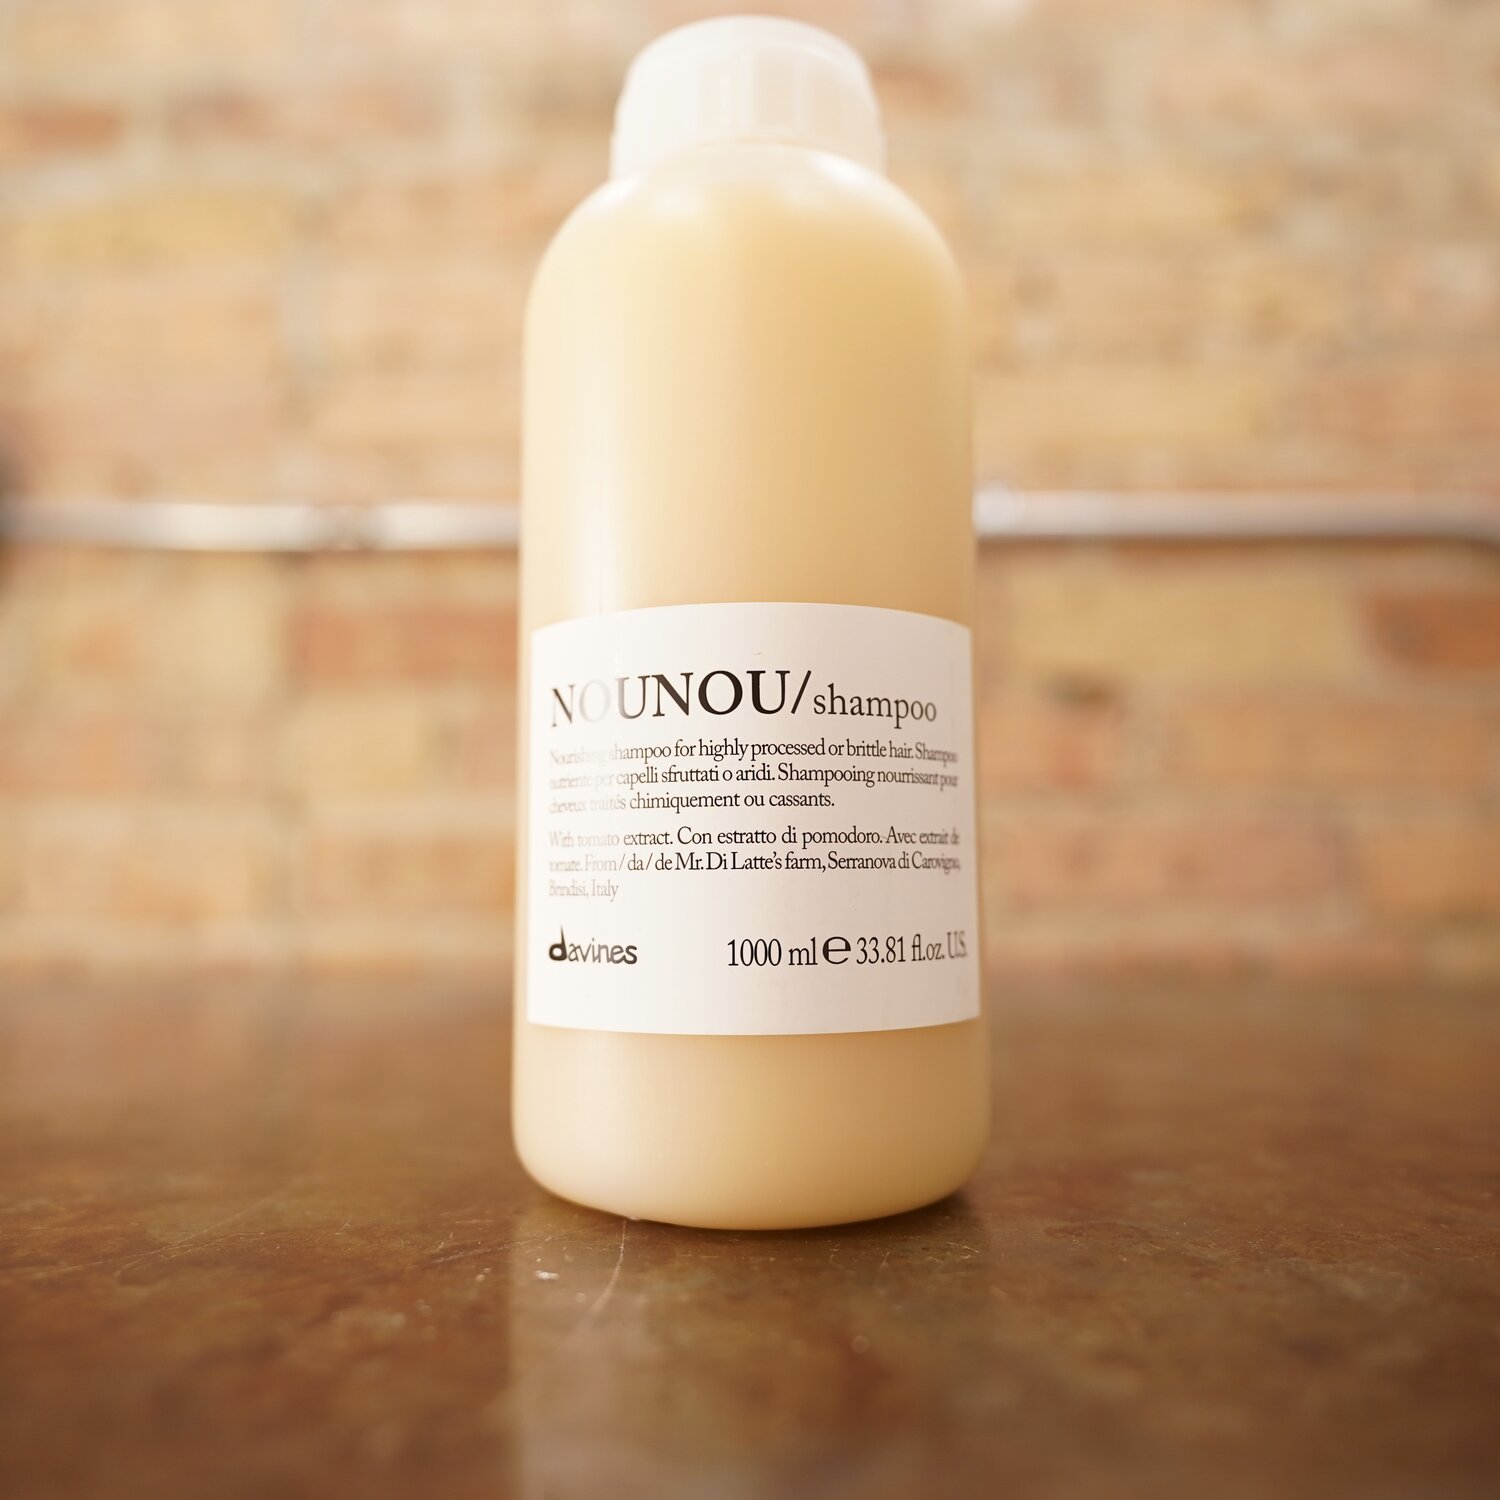 NOUNOU Shampoo — withlove collective